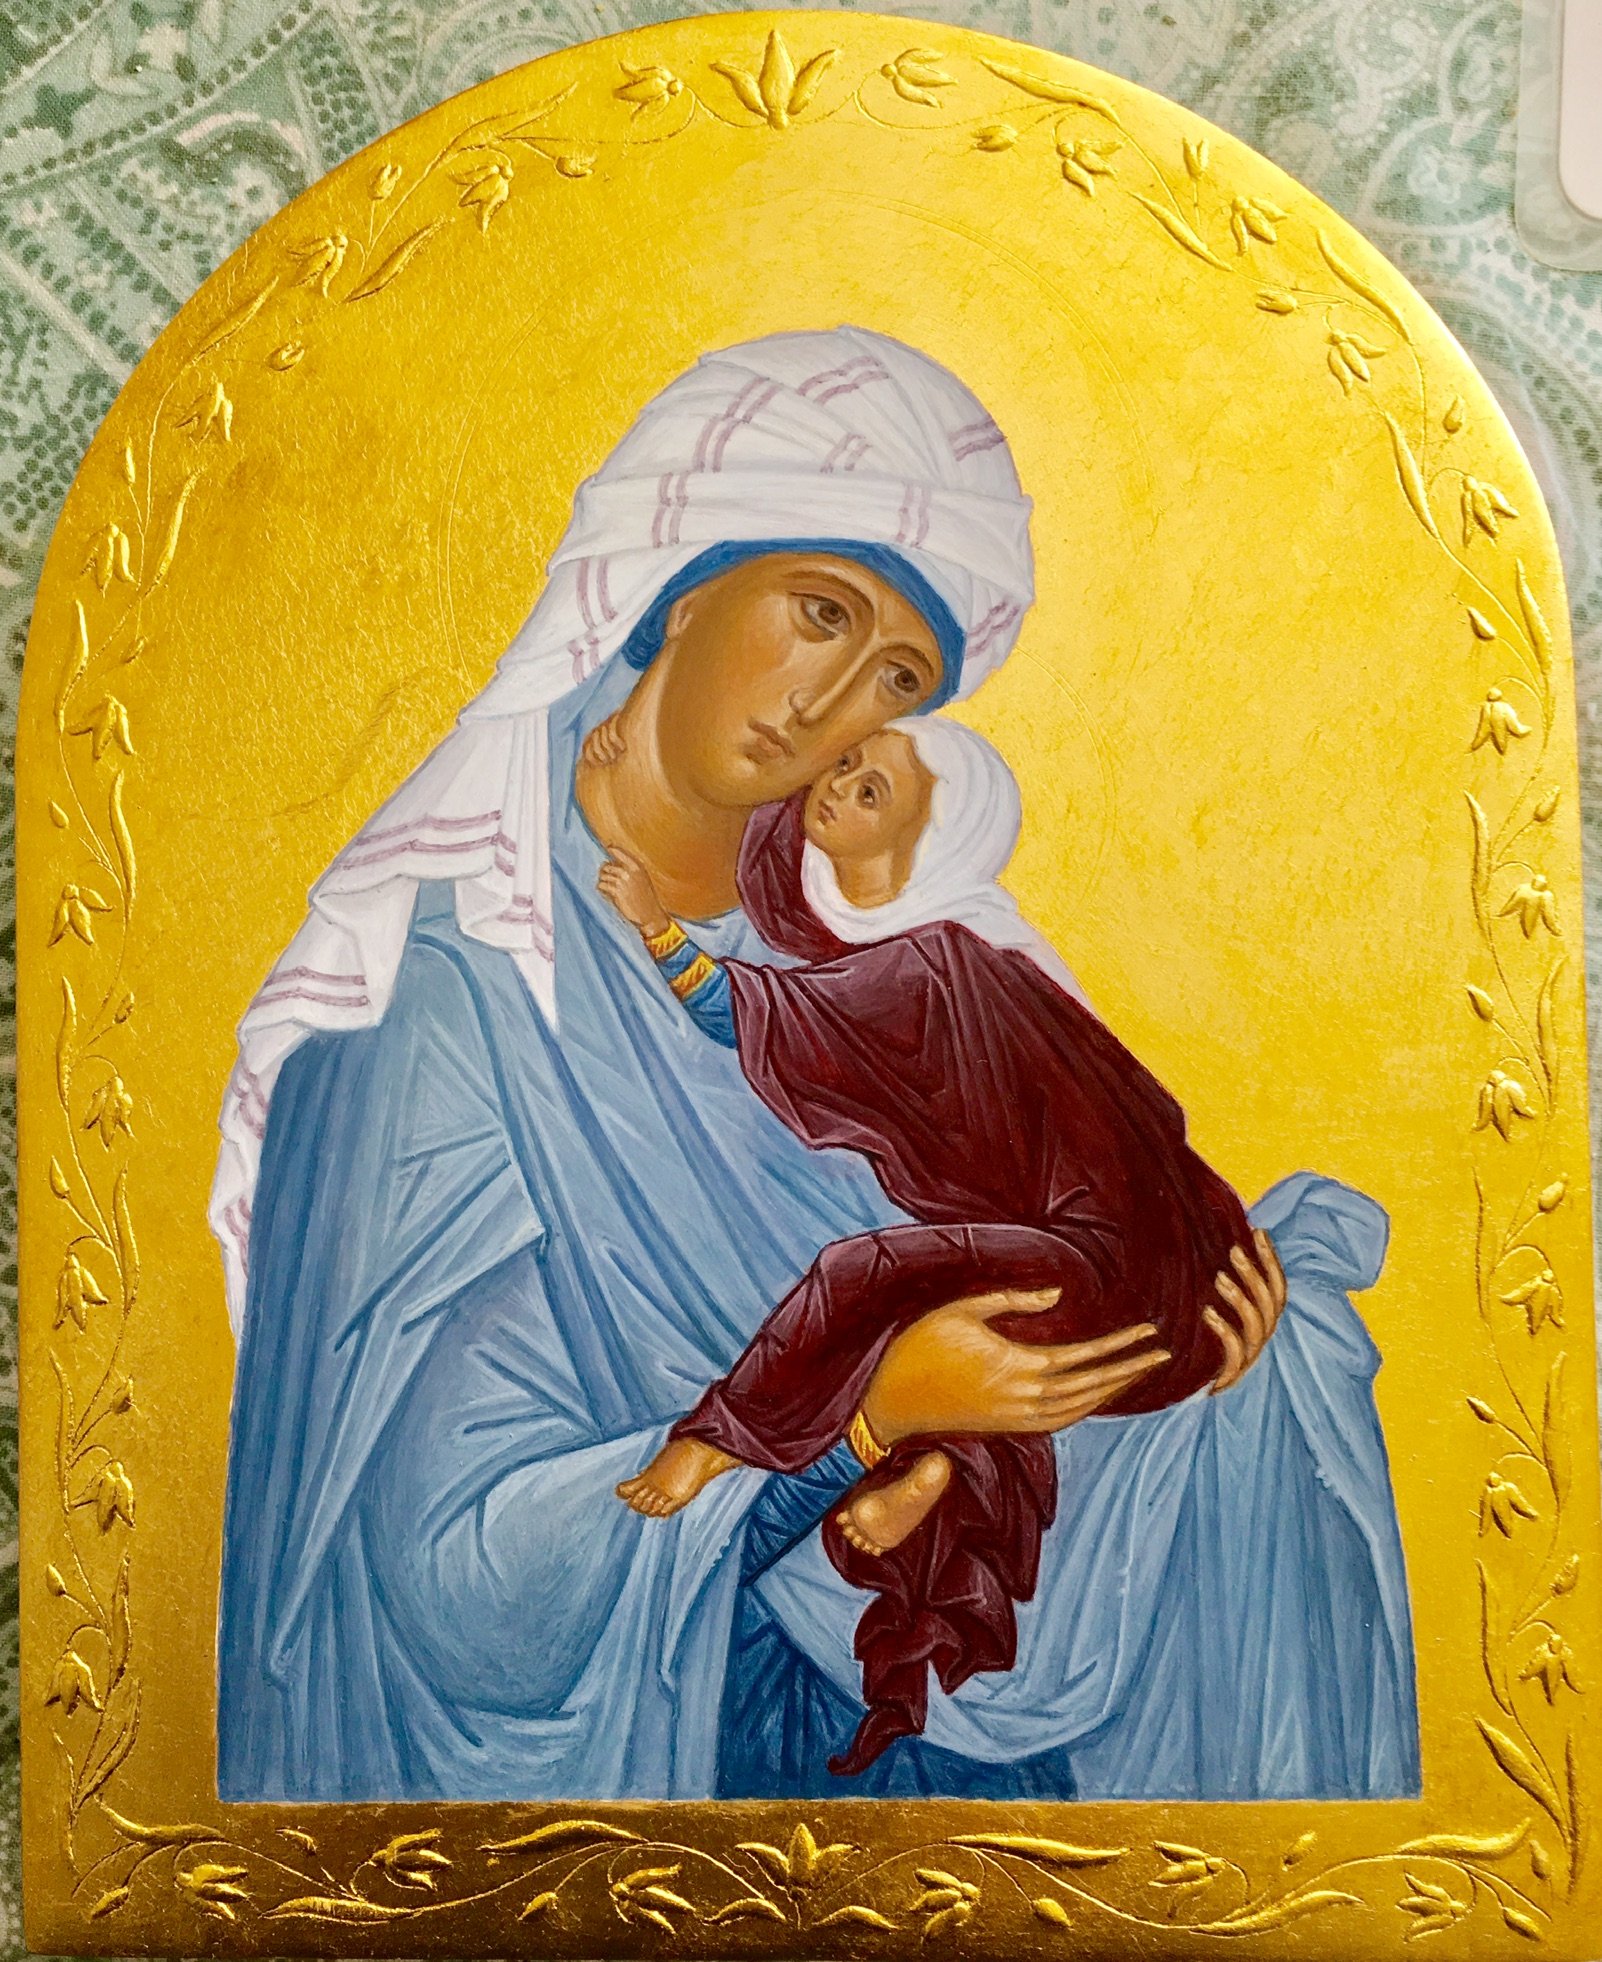 Saint Ann and Virgin Mary